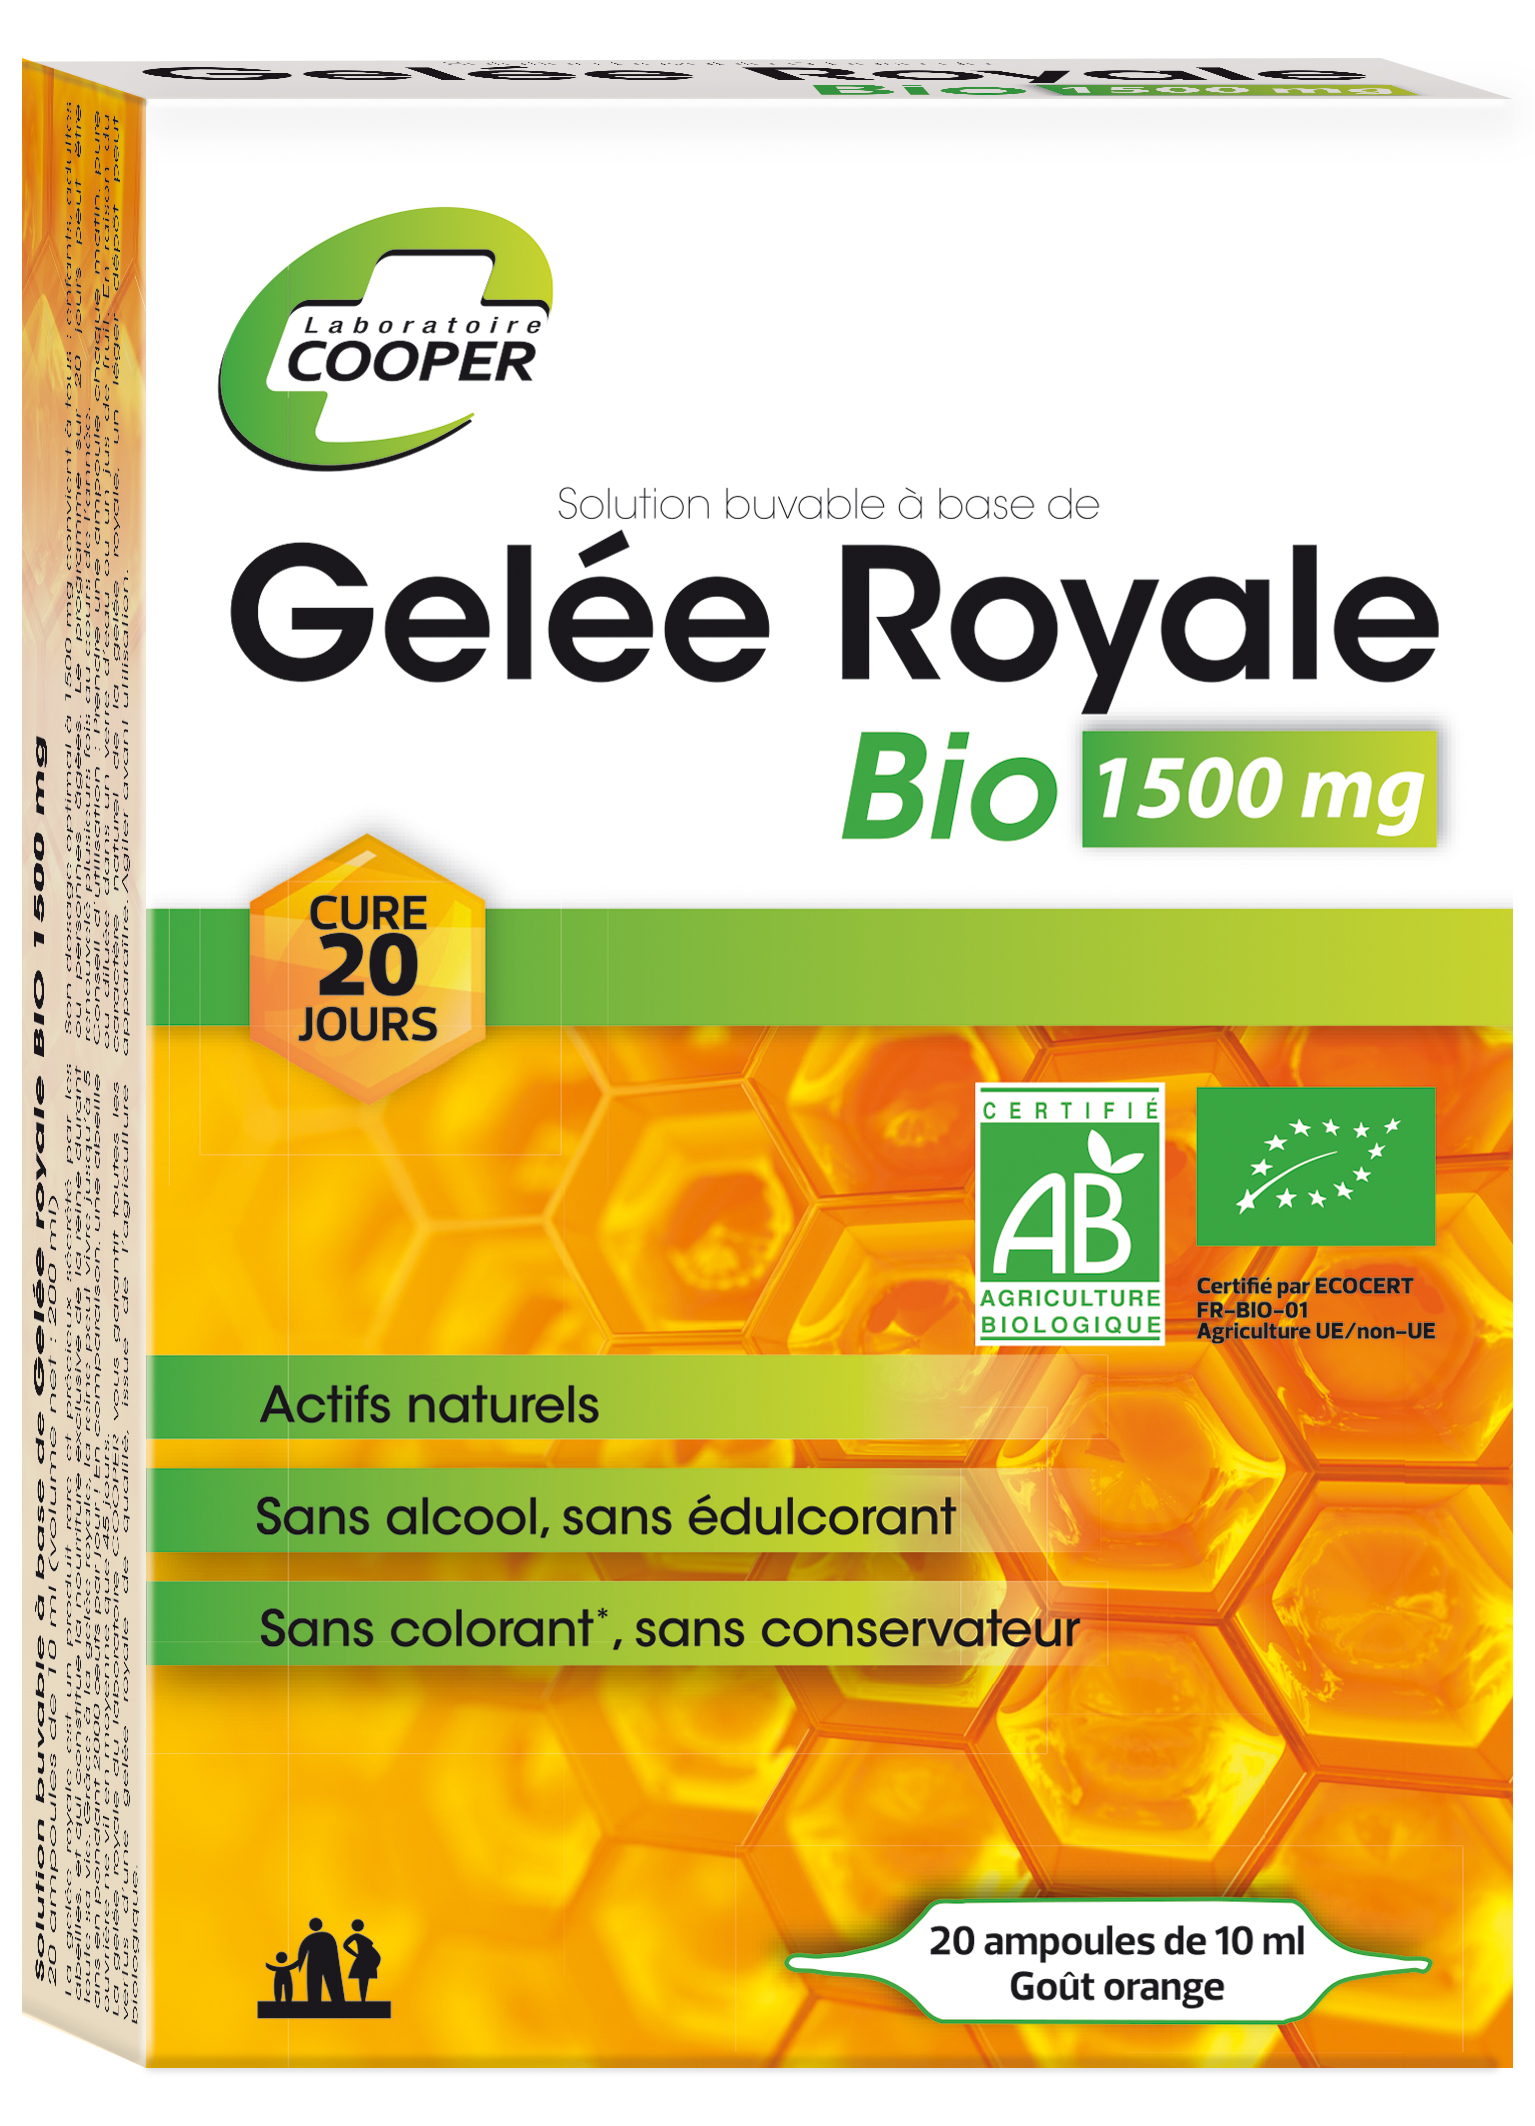 GELEE ROYALE BIO 1500 mg